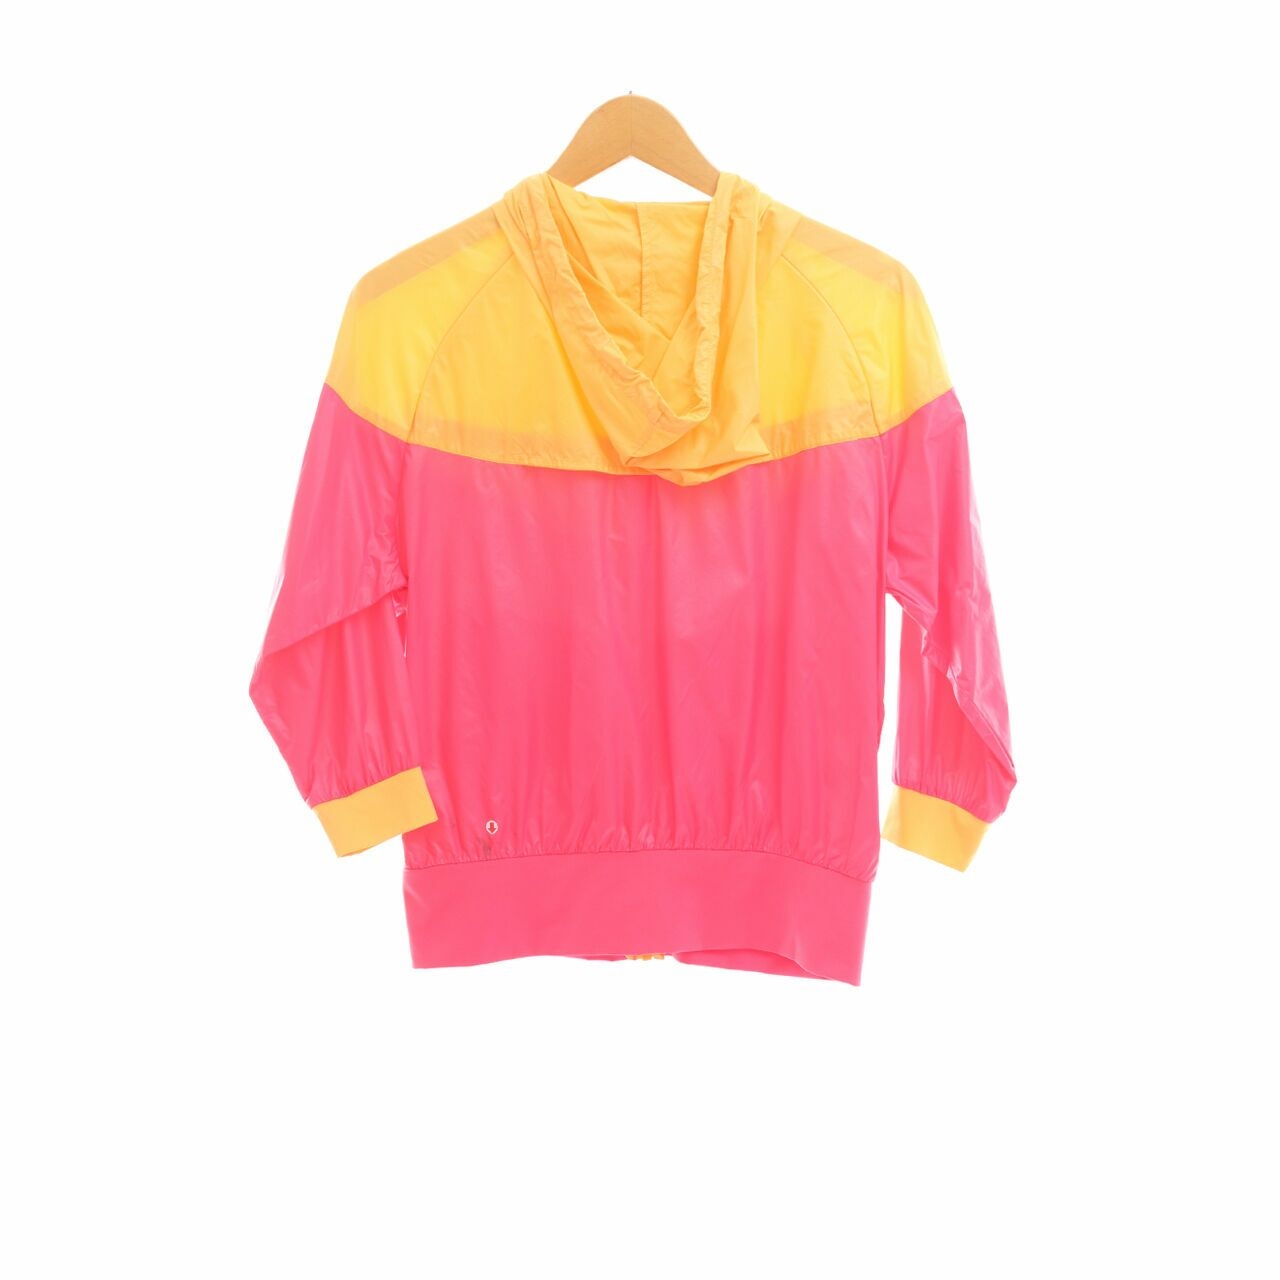 Nike Pink/Yellow Jaket